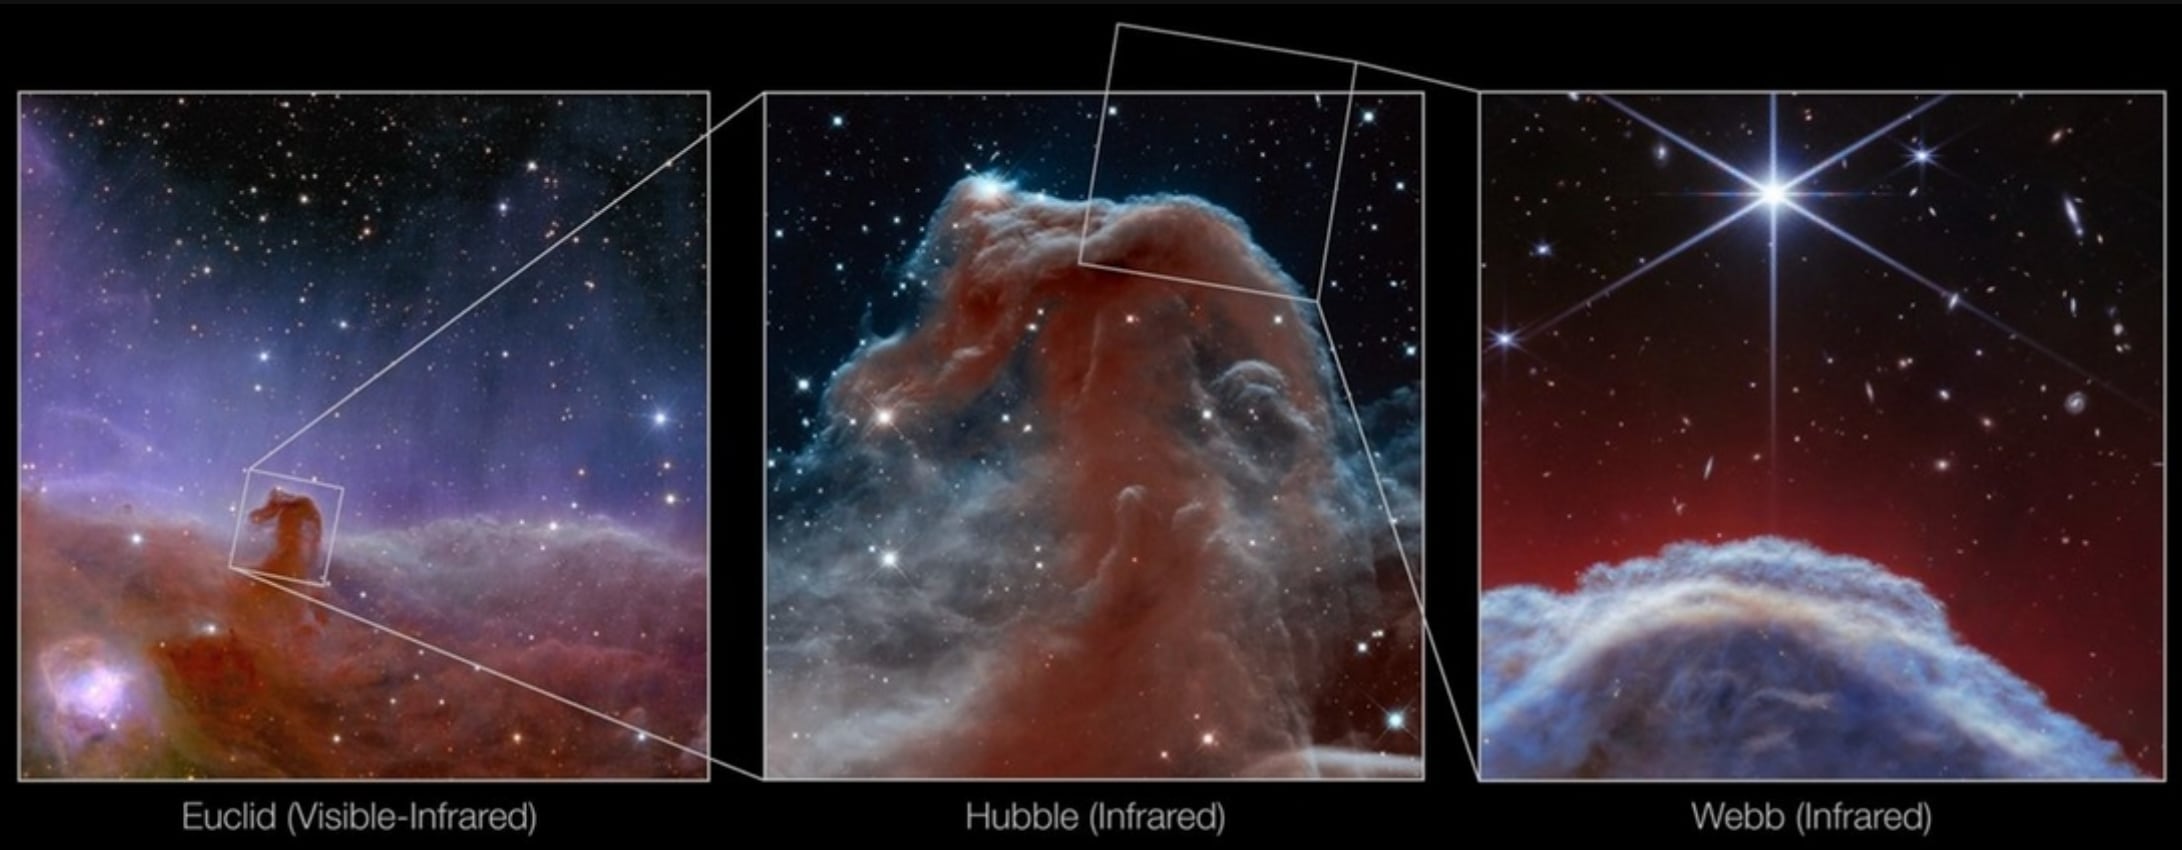 imágenes asombrosas: el james webb revela nuevos secretos de la nebulosa ‘cabeza de caballo’